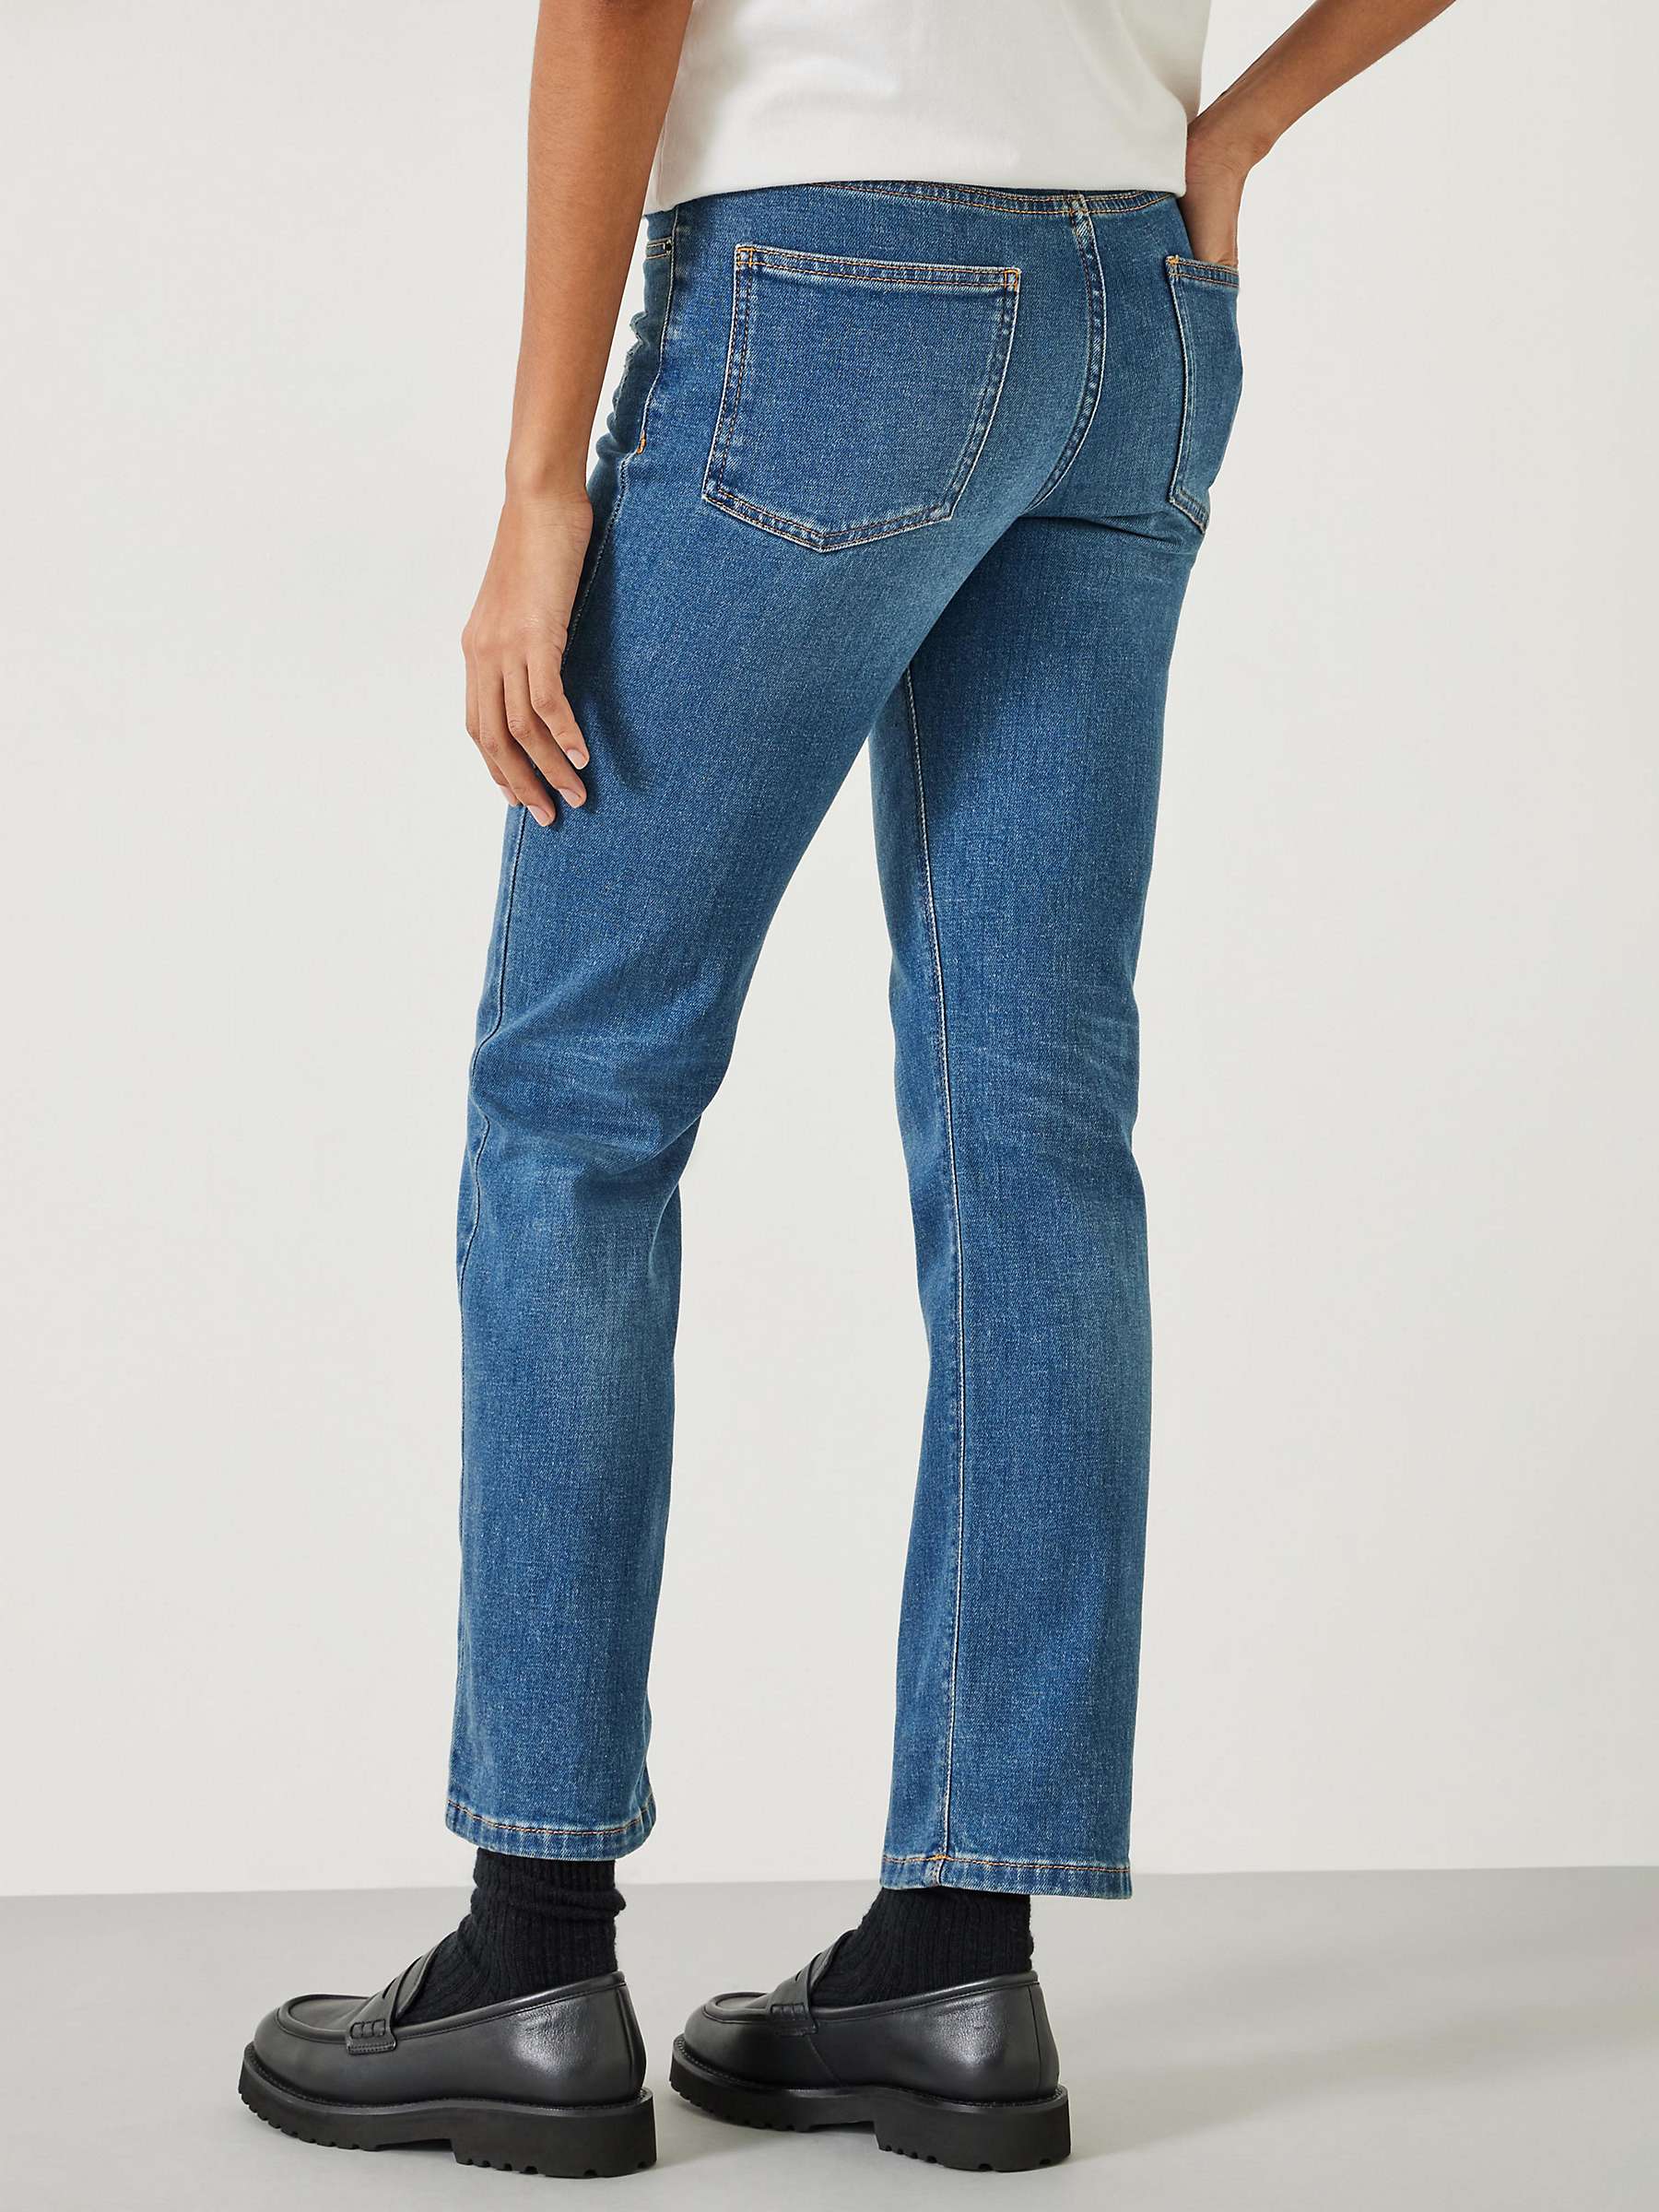 Buy HUSH Agnes Ankle Grazer Jeans, Vintage Wash Blue Online at johnlewis.com